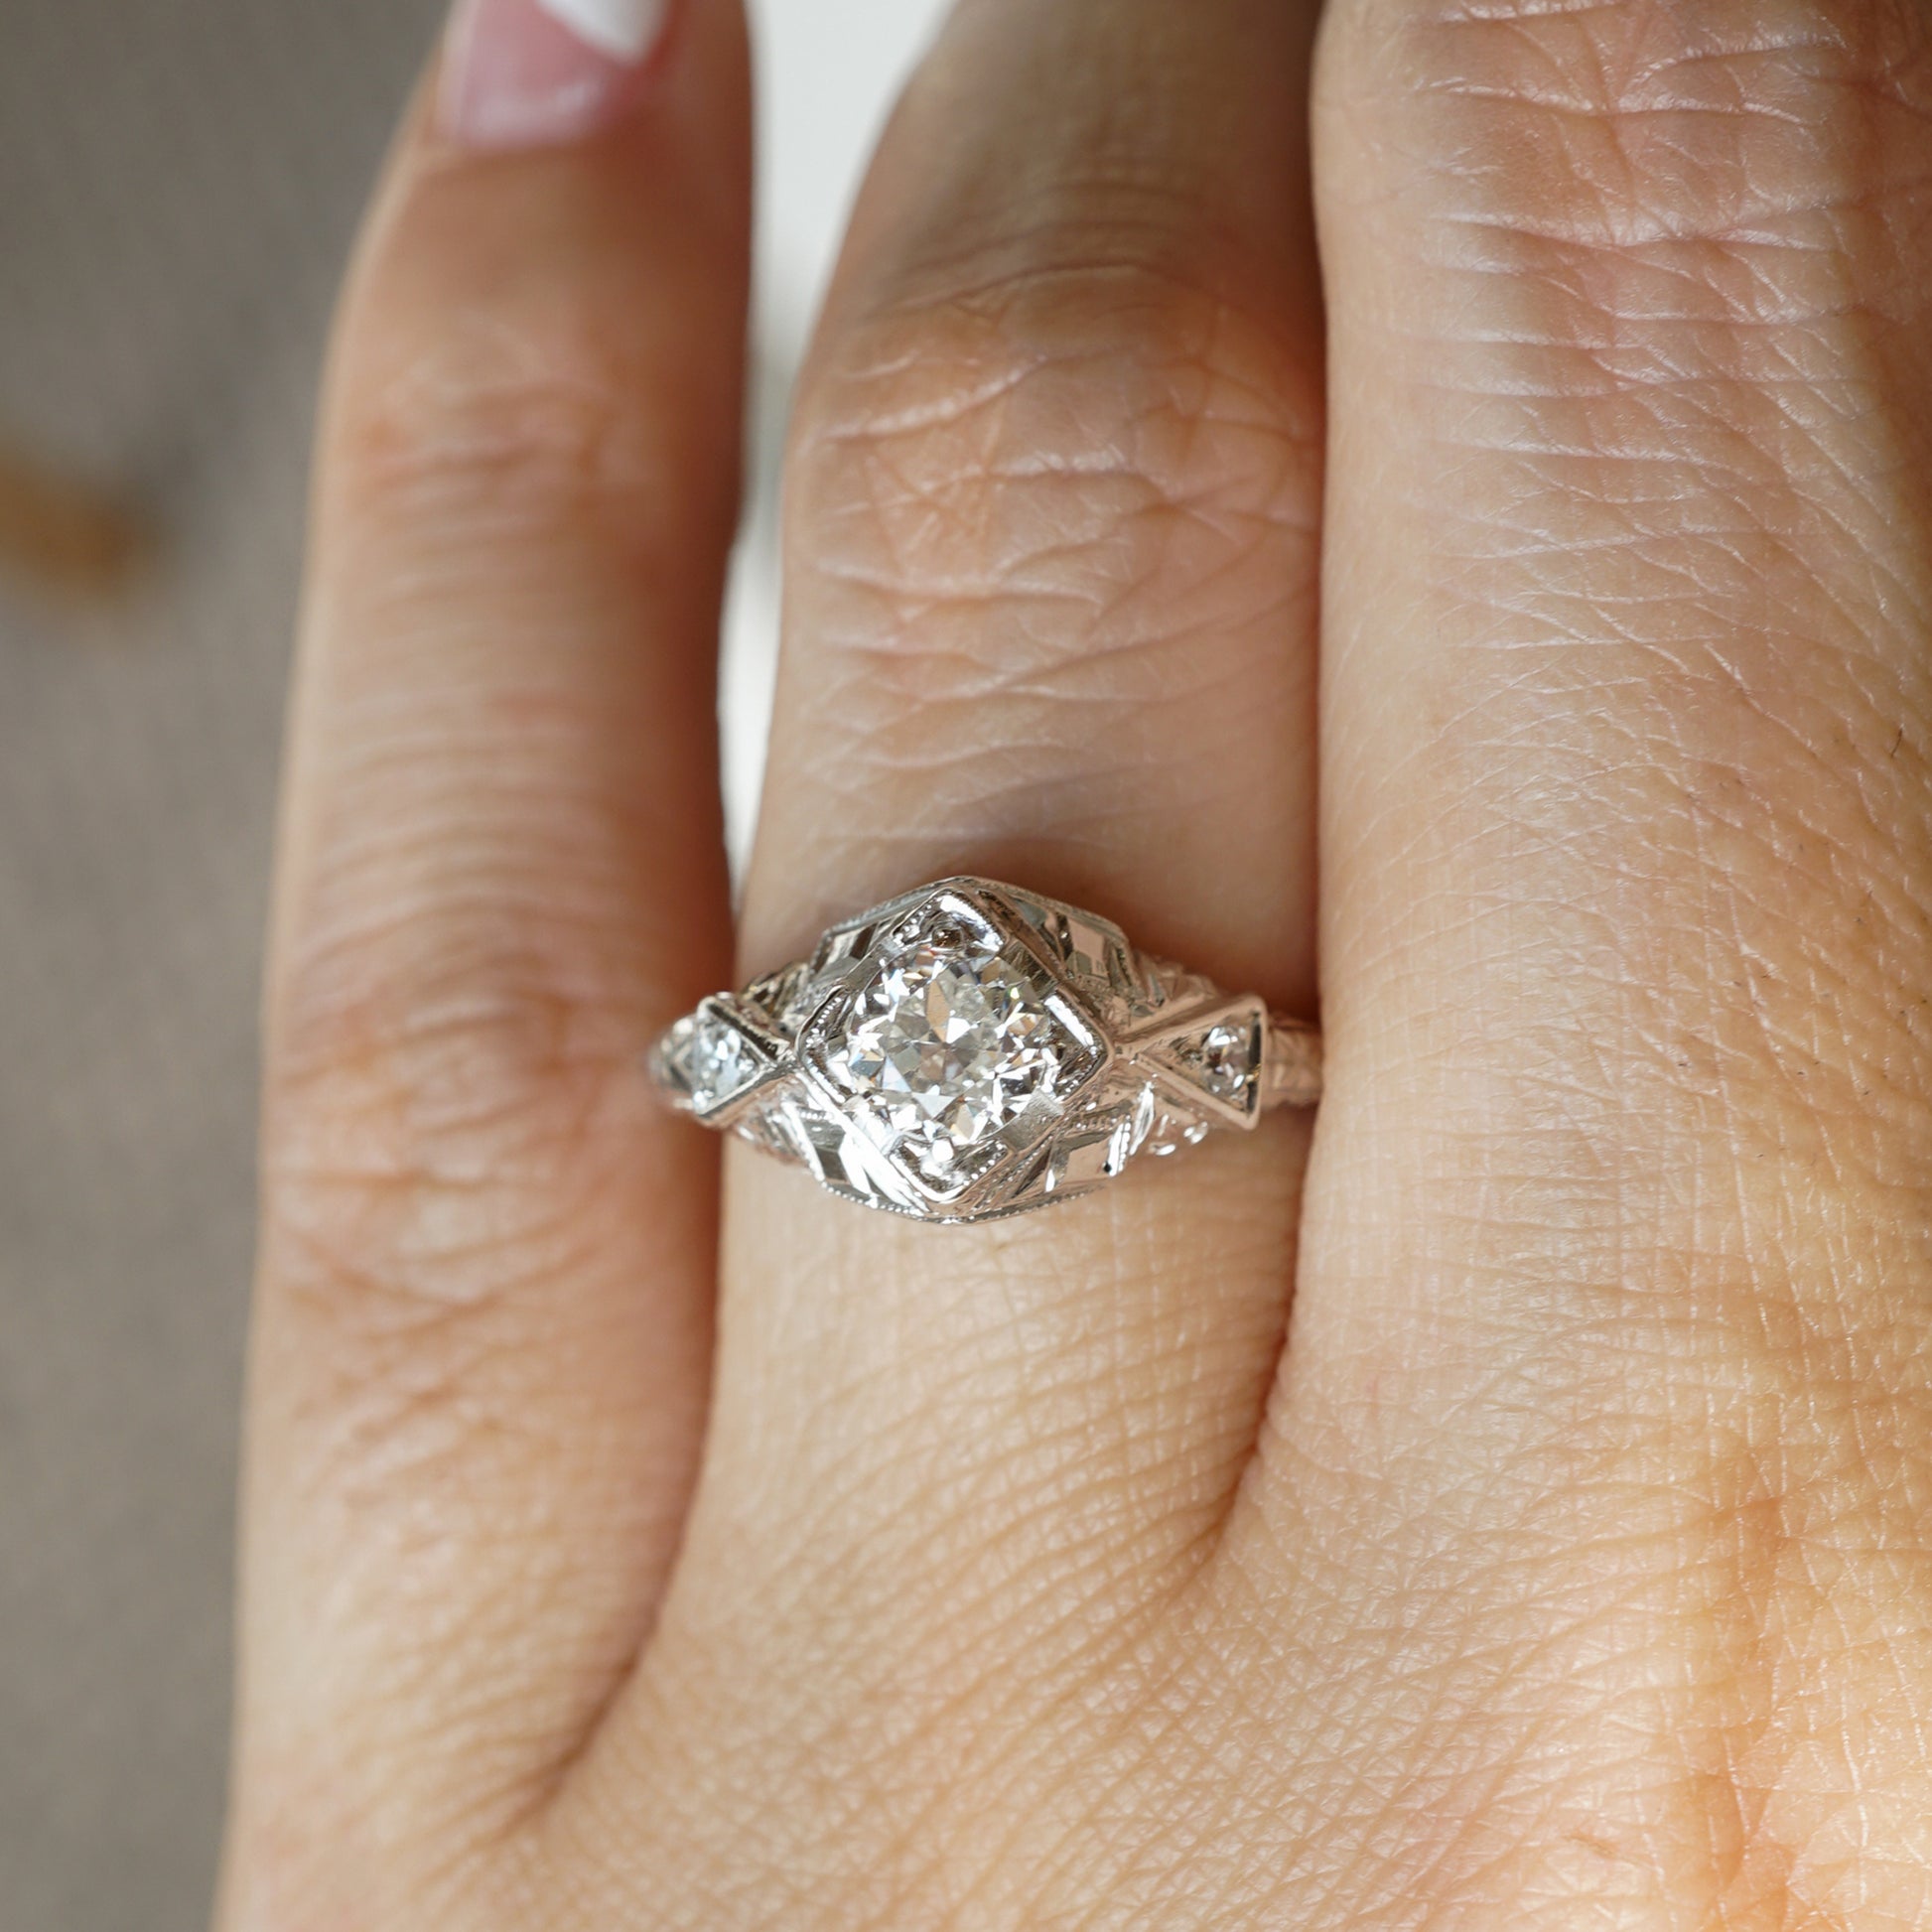 .40 Art Deco Diamond Engagement Ring in 18K White Gold